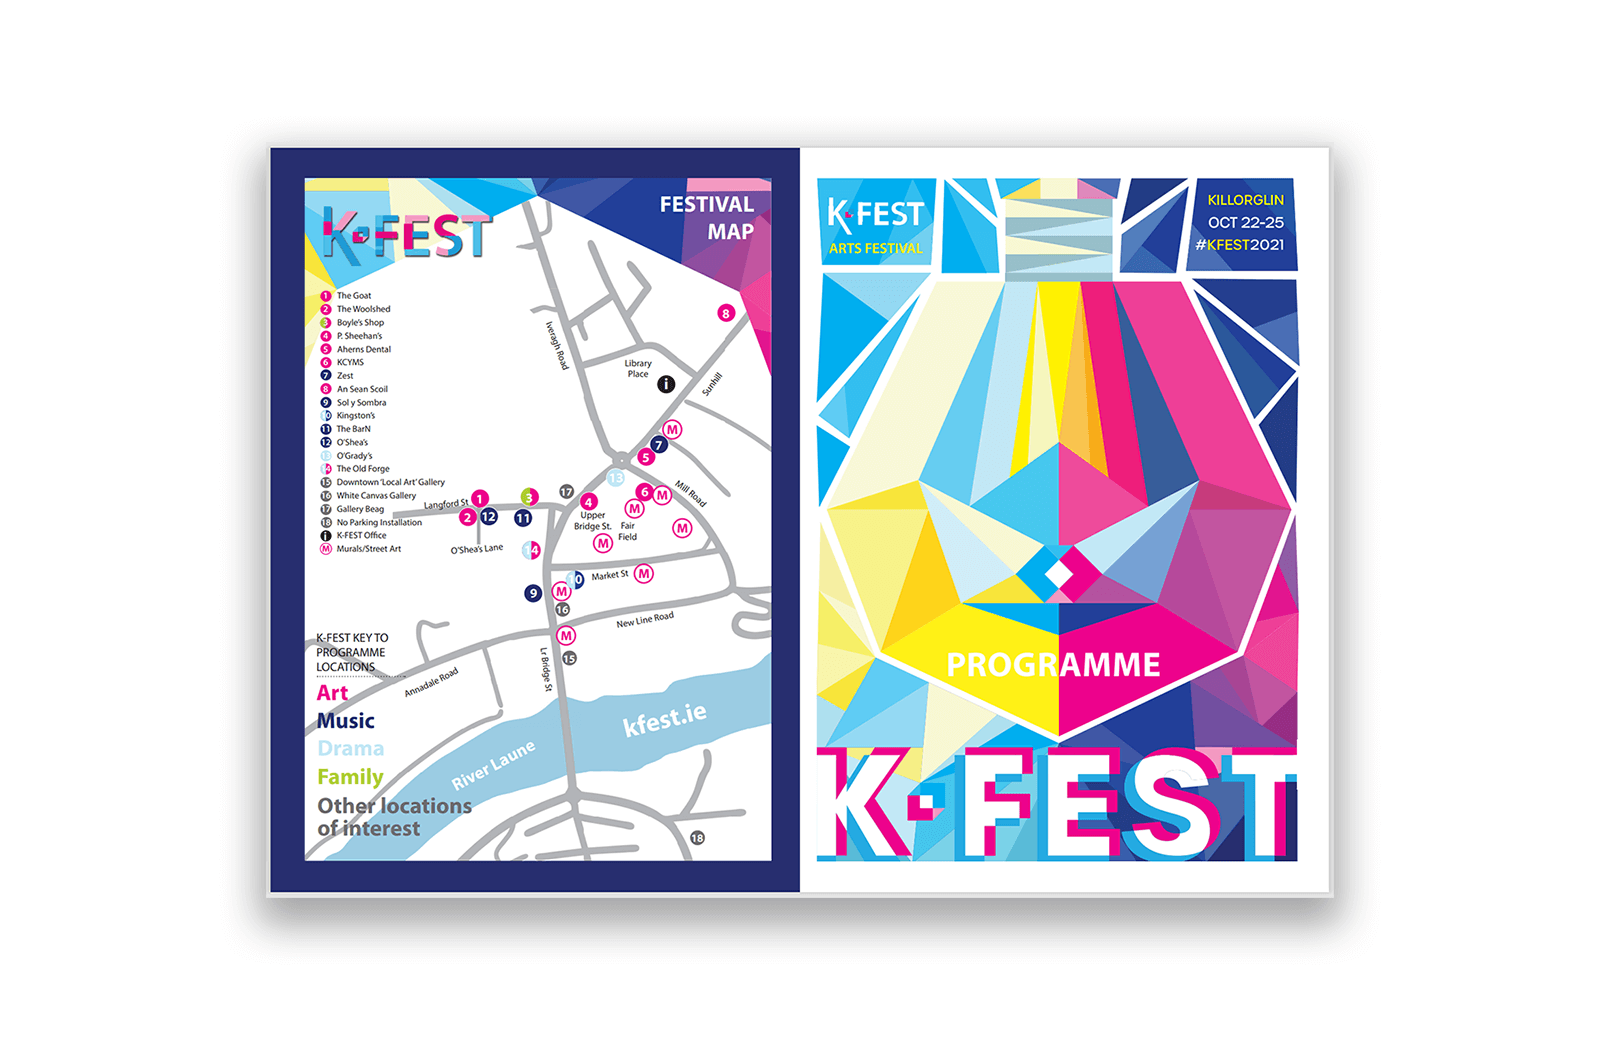 K-FEST 2021 programme download